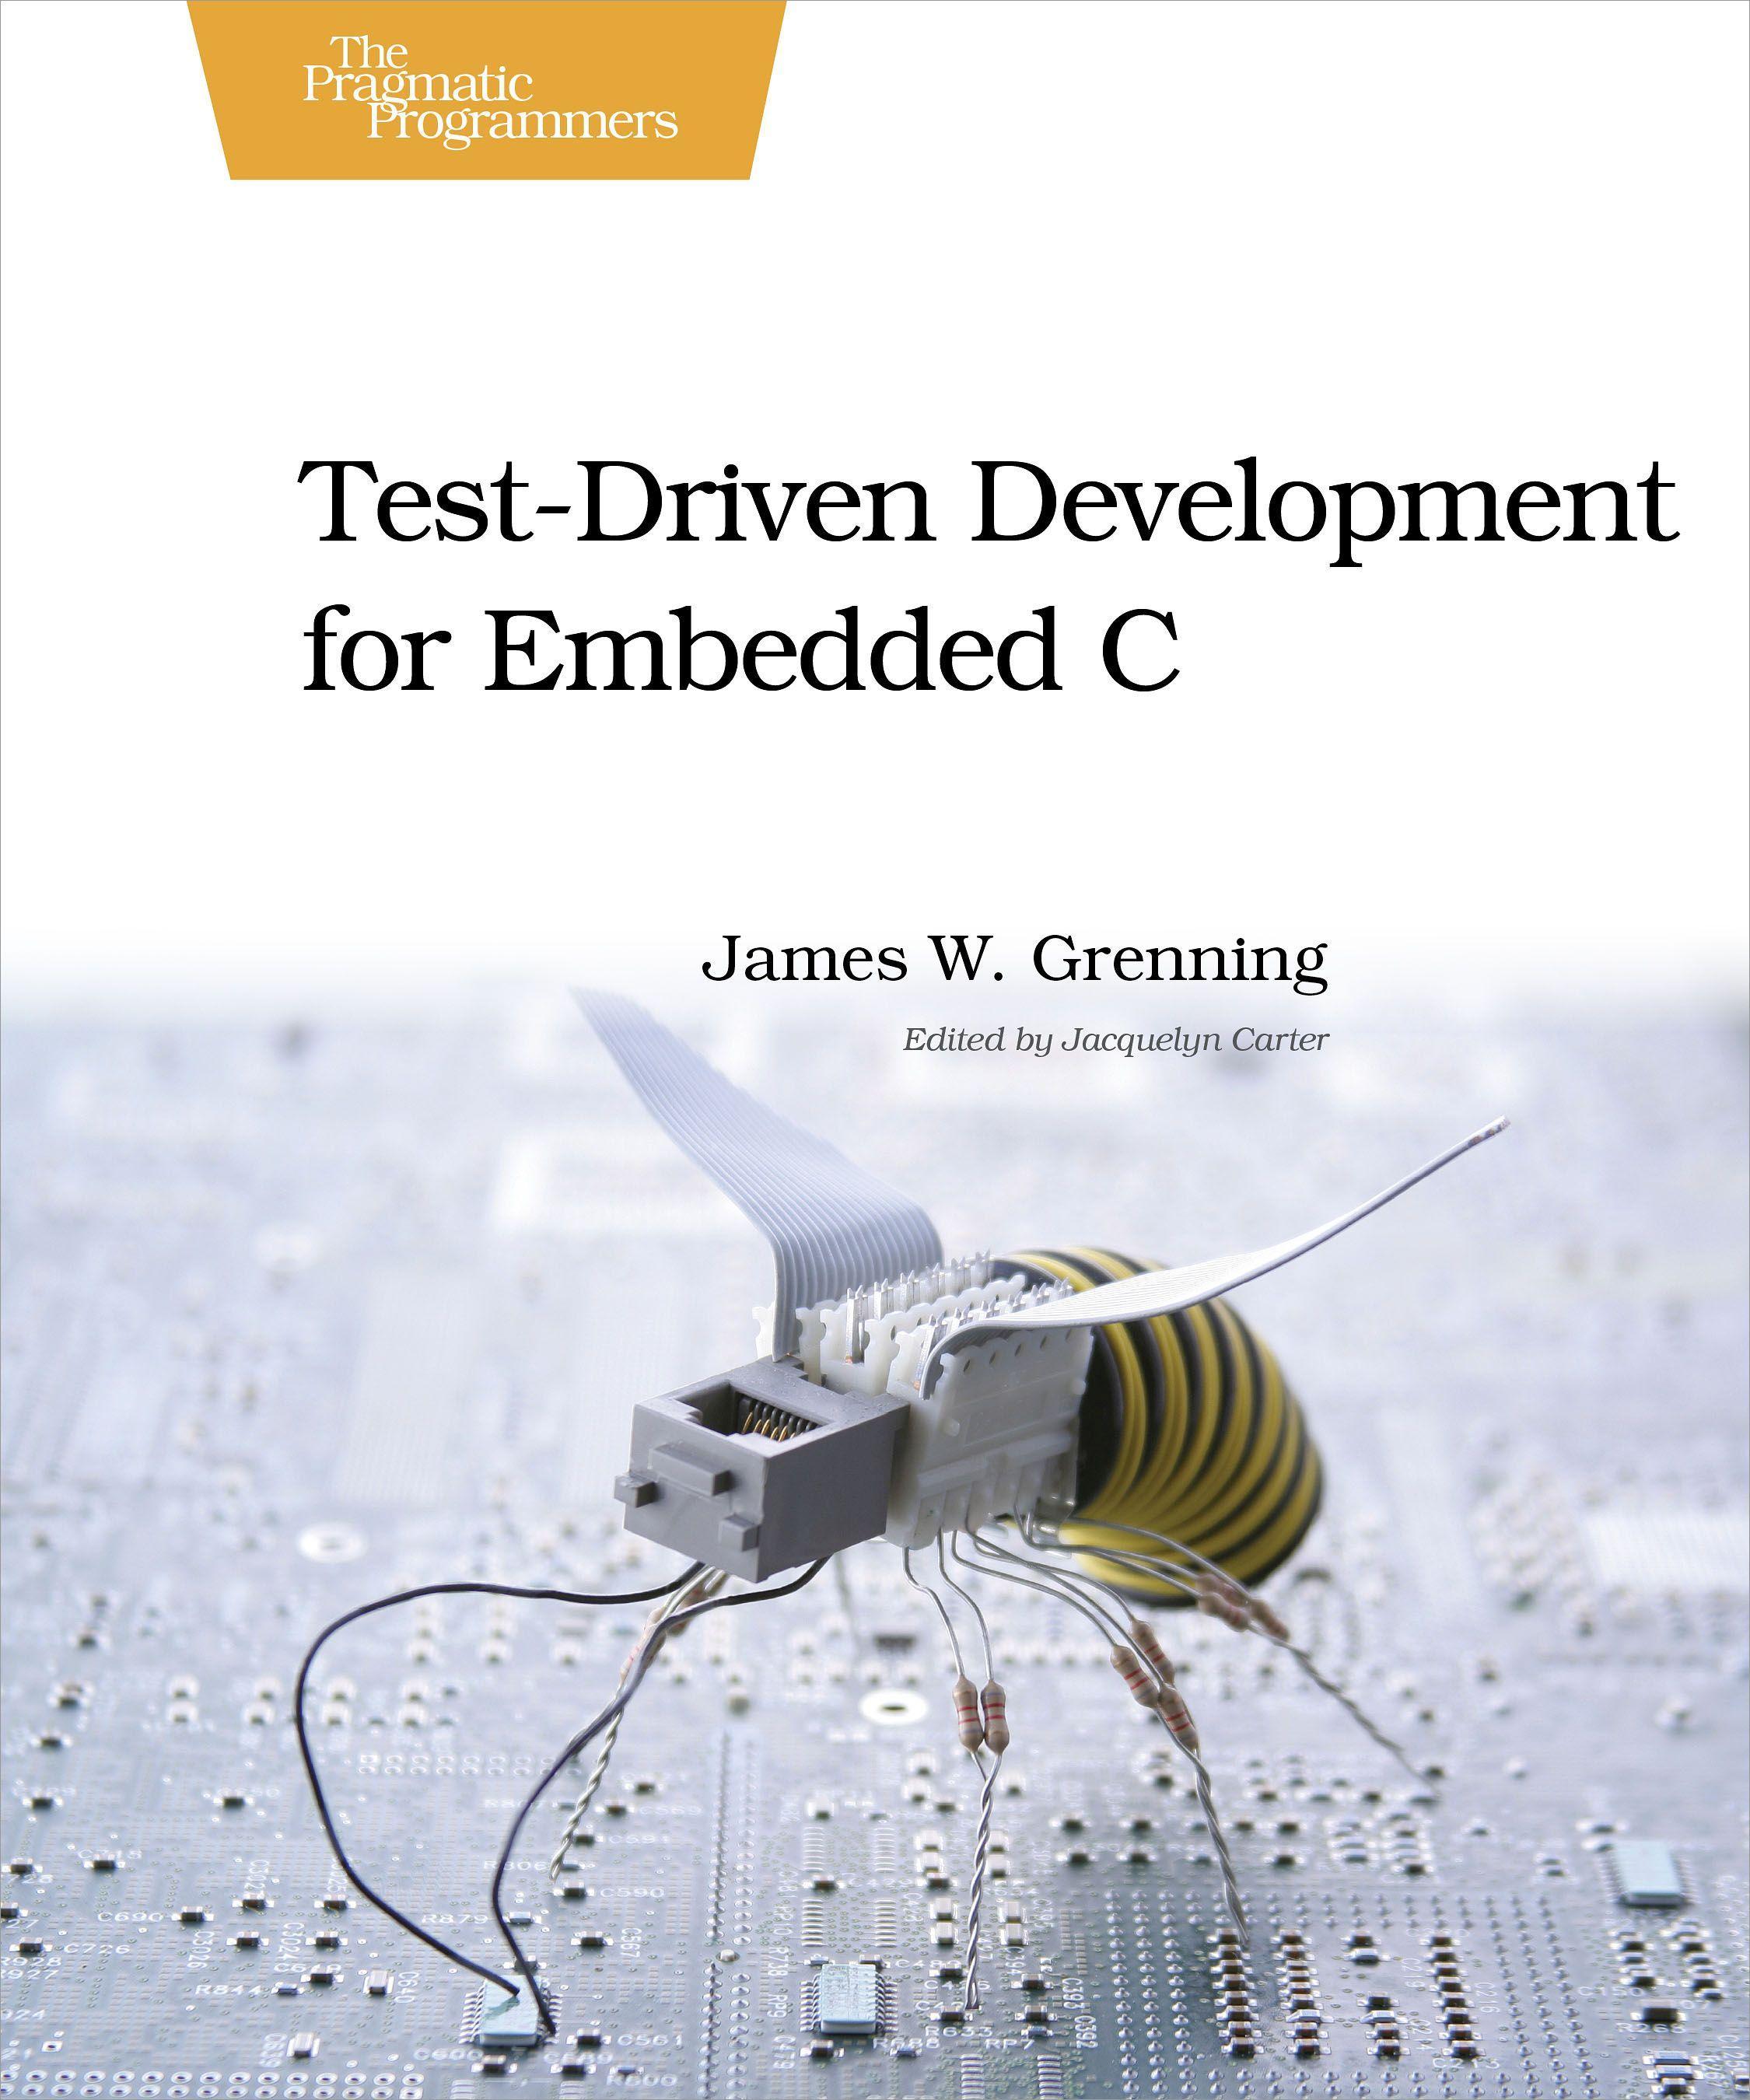 Test Driven Development for Embedded C / James W. Grenning / Taschenbuch / Pragmatic Programmers / XXIV / Englisch / 2011 / O'Reilly Media / EAN 9781934356623 - Grenning, James W.